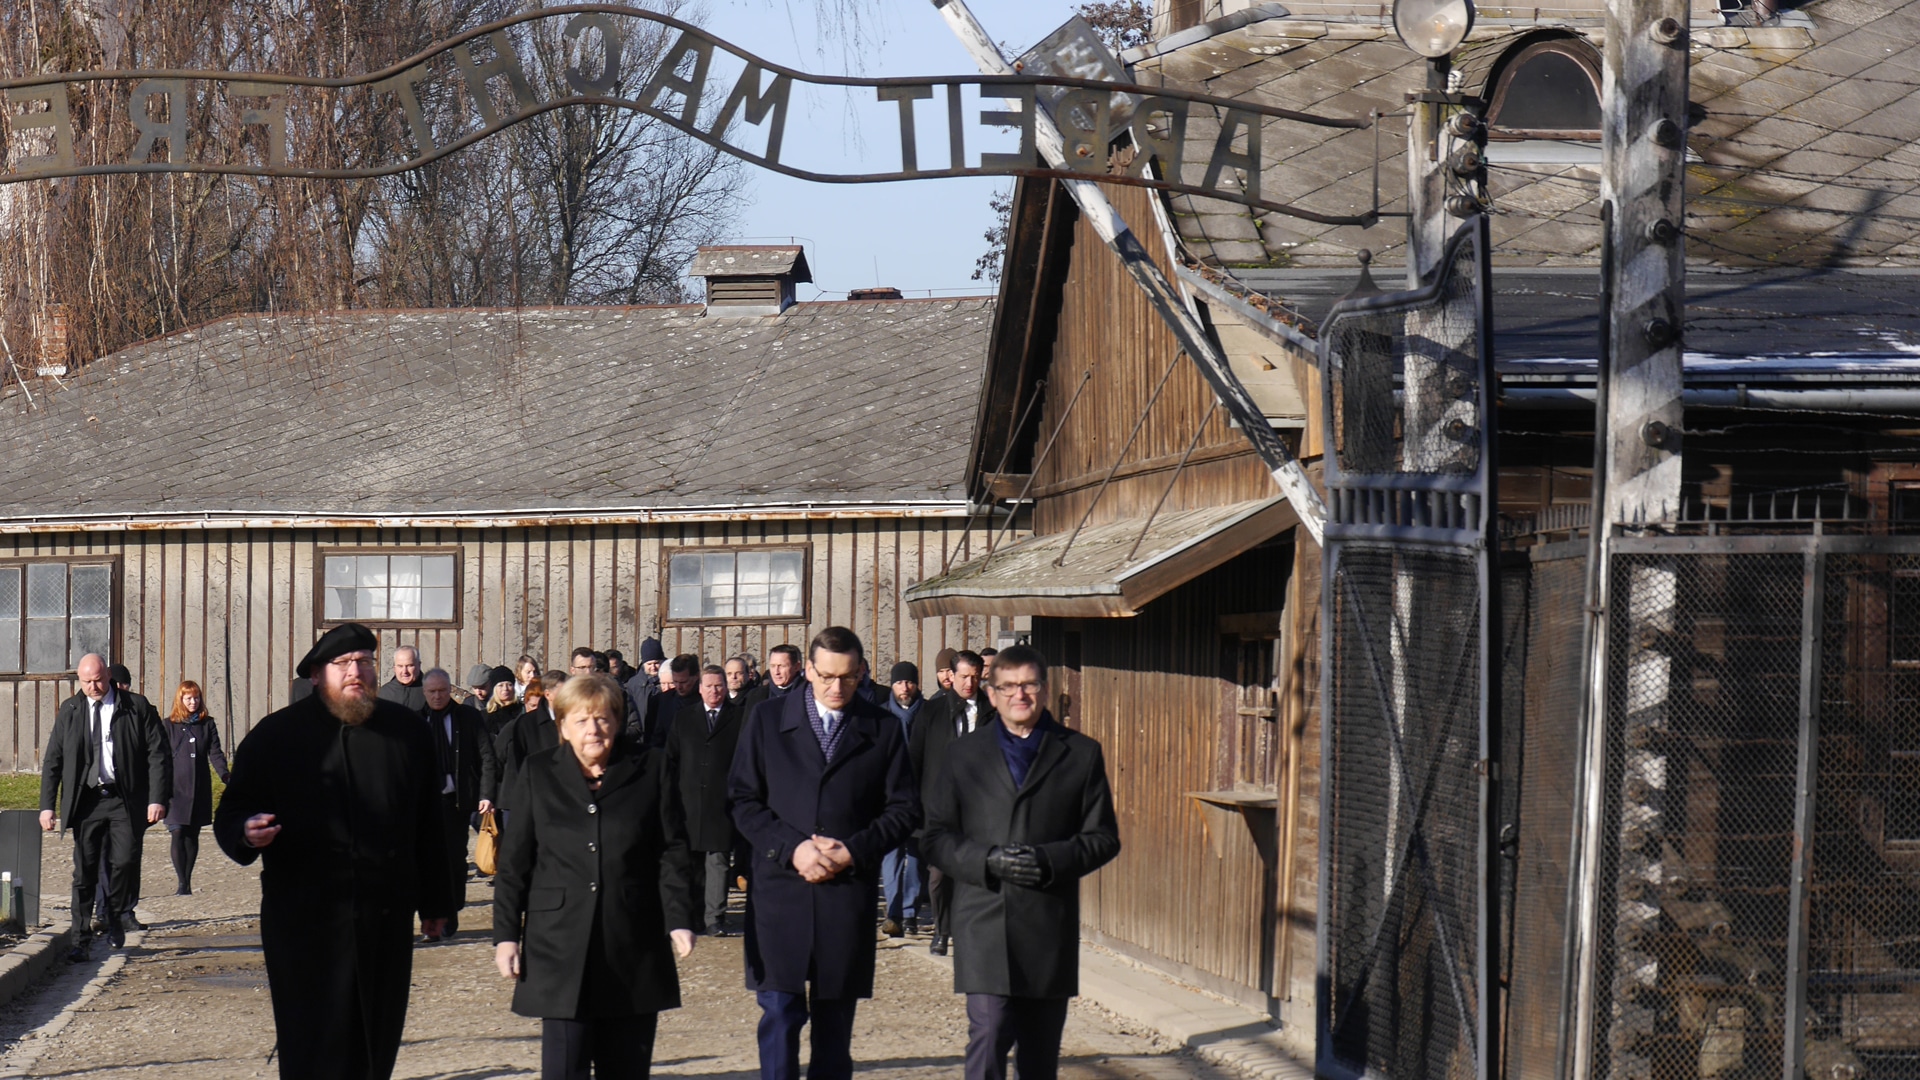 Besuch am Ort des Schreckens: Merkel (2. v. l.) in Begleitung des polnischen Premiers Morawiecki (2. v. r.)